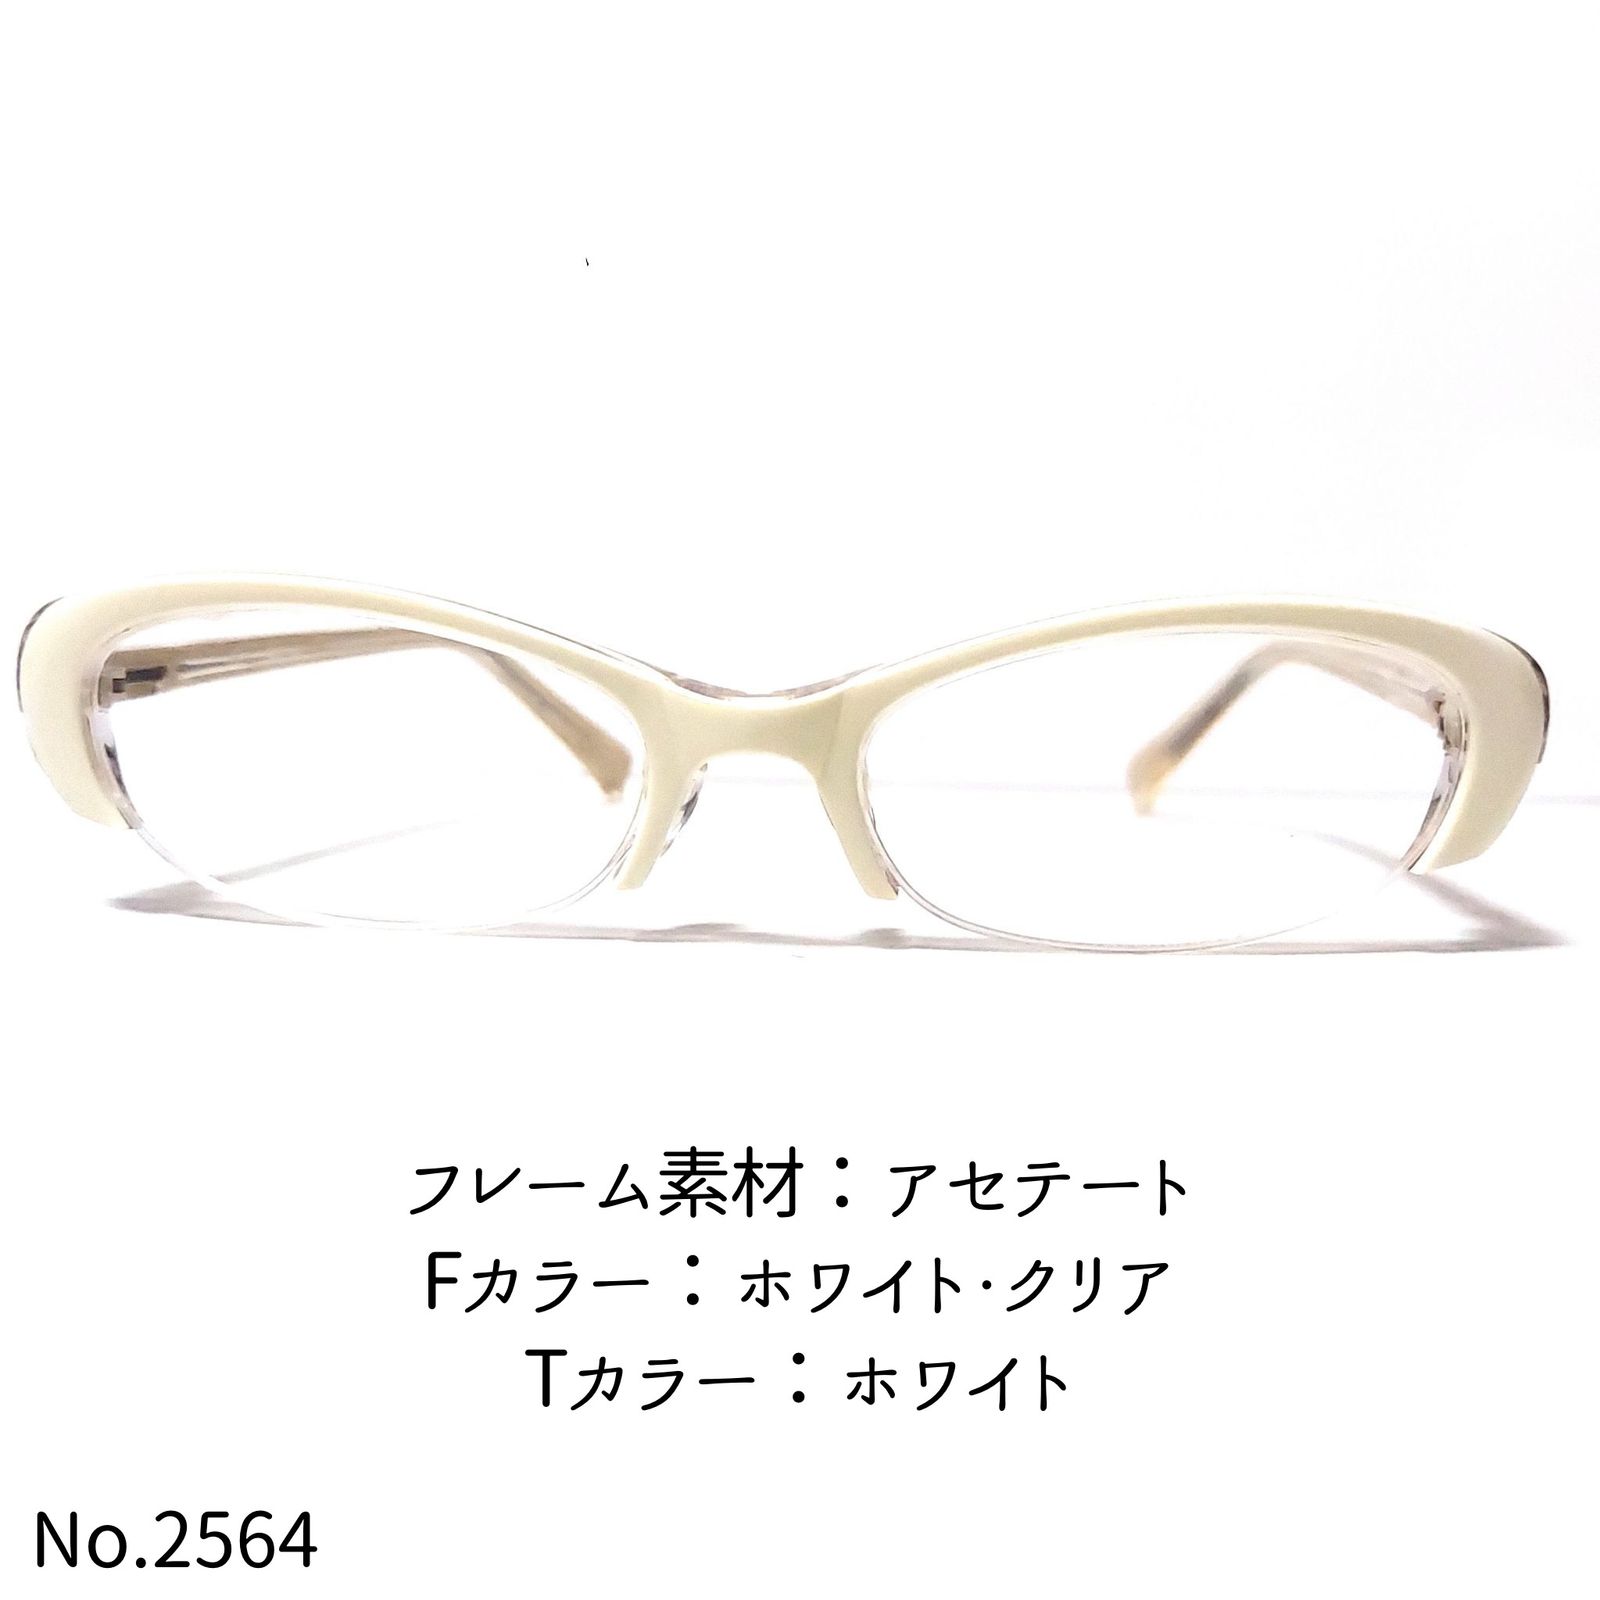 ダテメガネNo.2564メガネ 1012T セル・ナイロール【度数入り込み価格